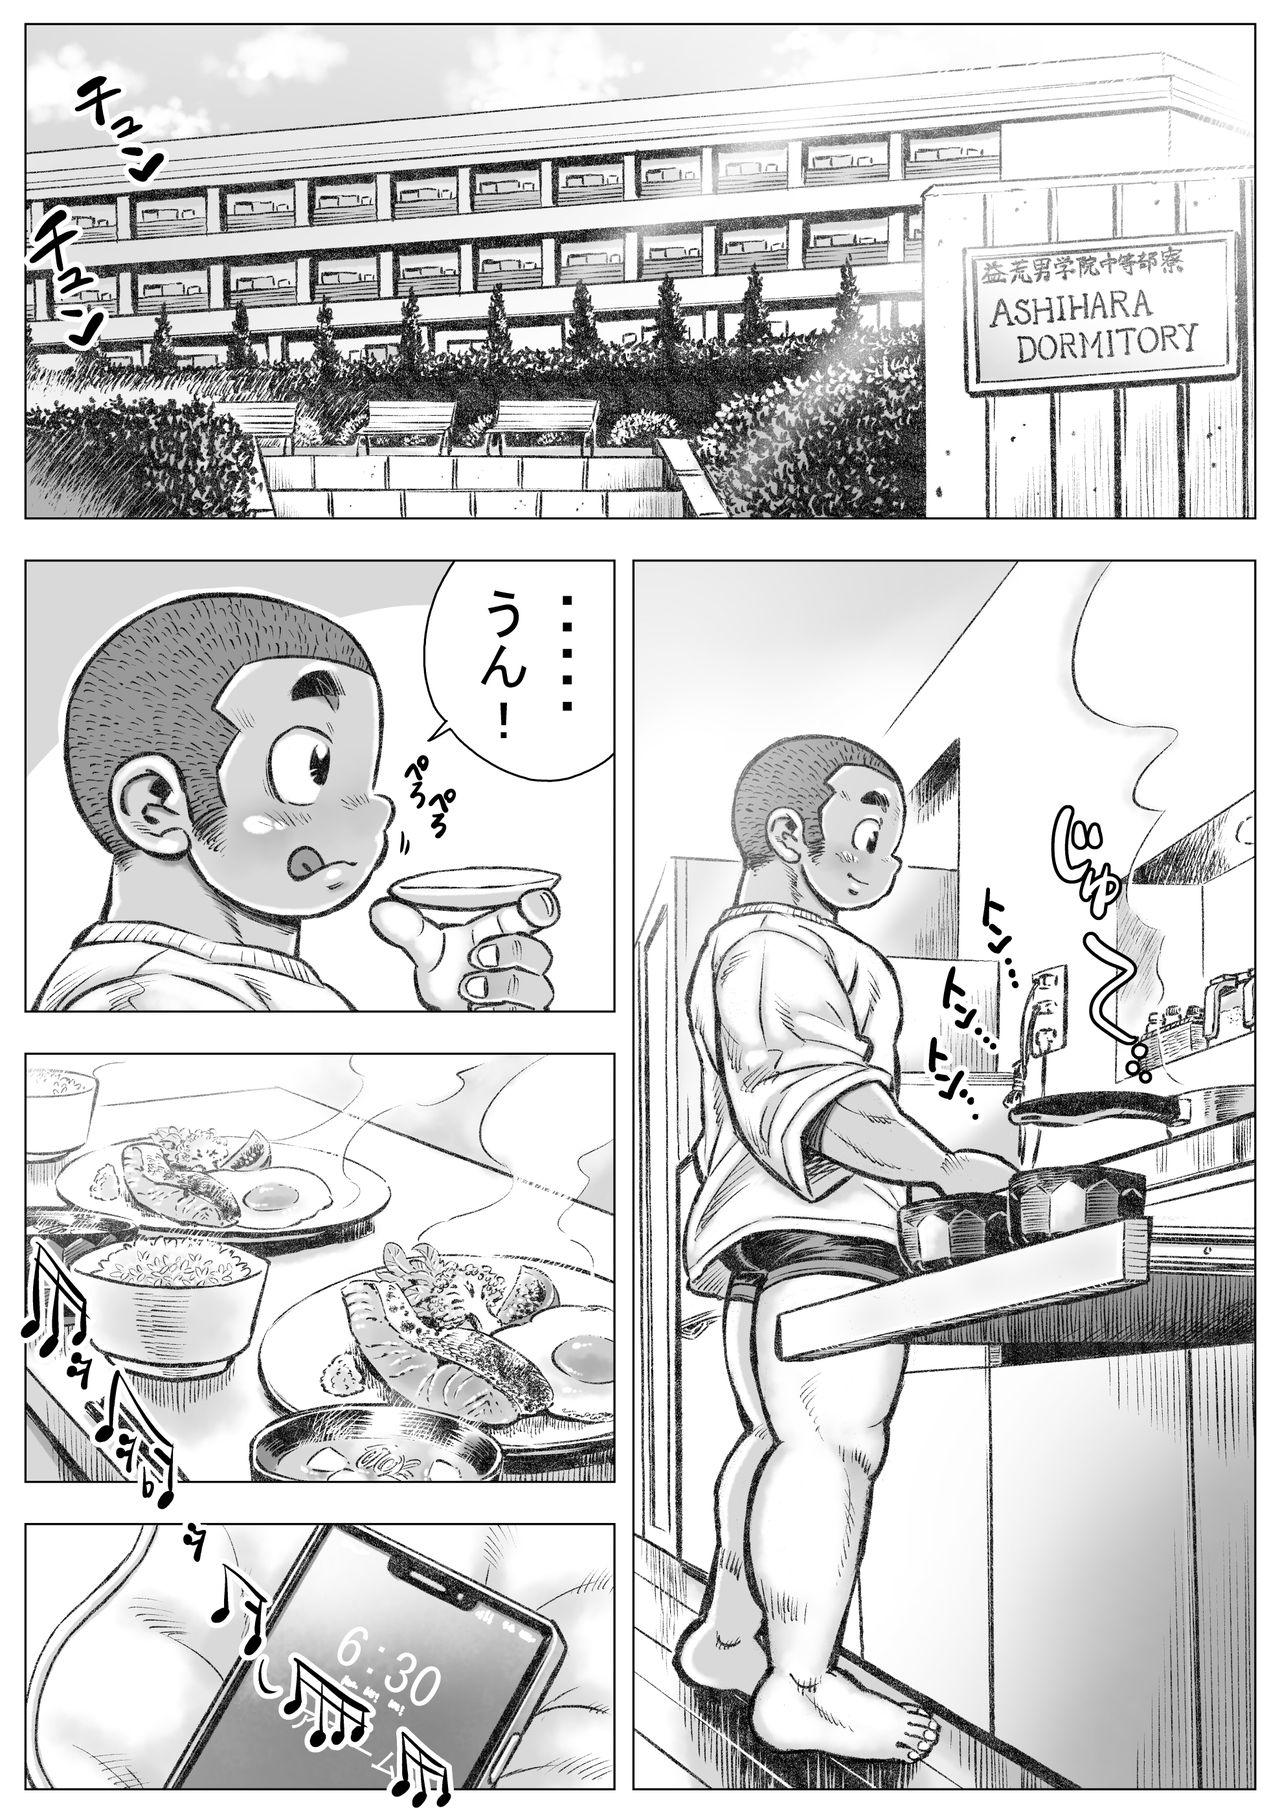 De Quatro Bouzu hae Kake Kawa Kamuri 2 Price - Page 2